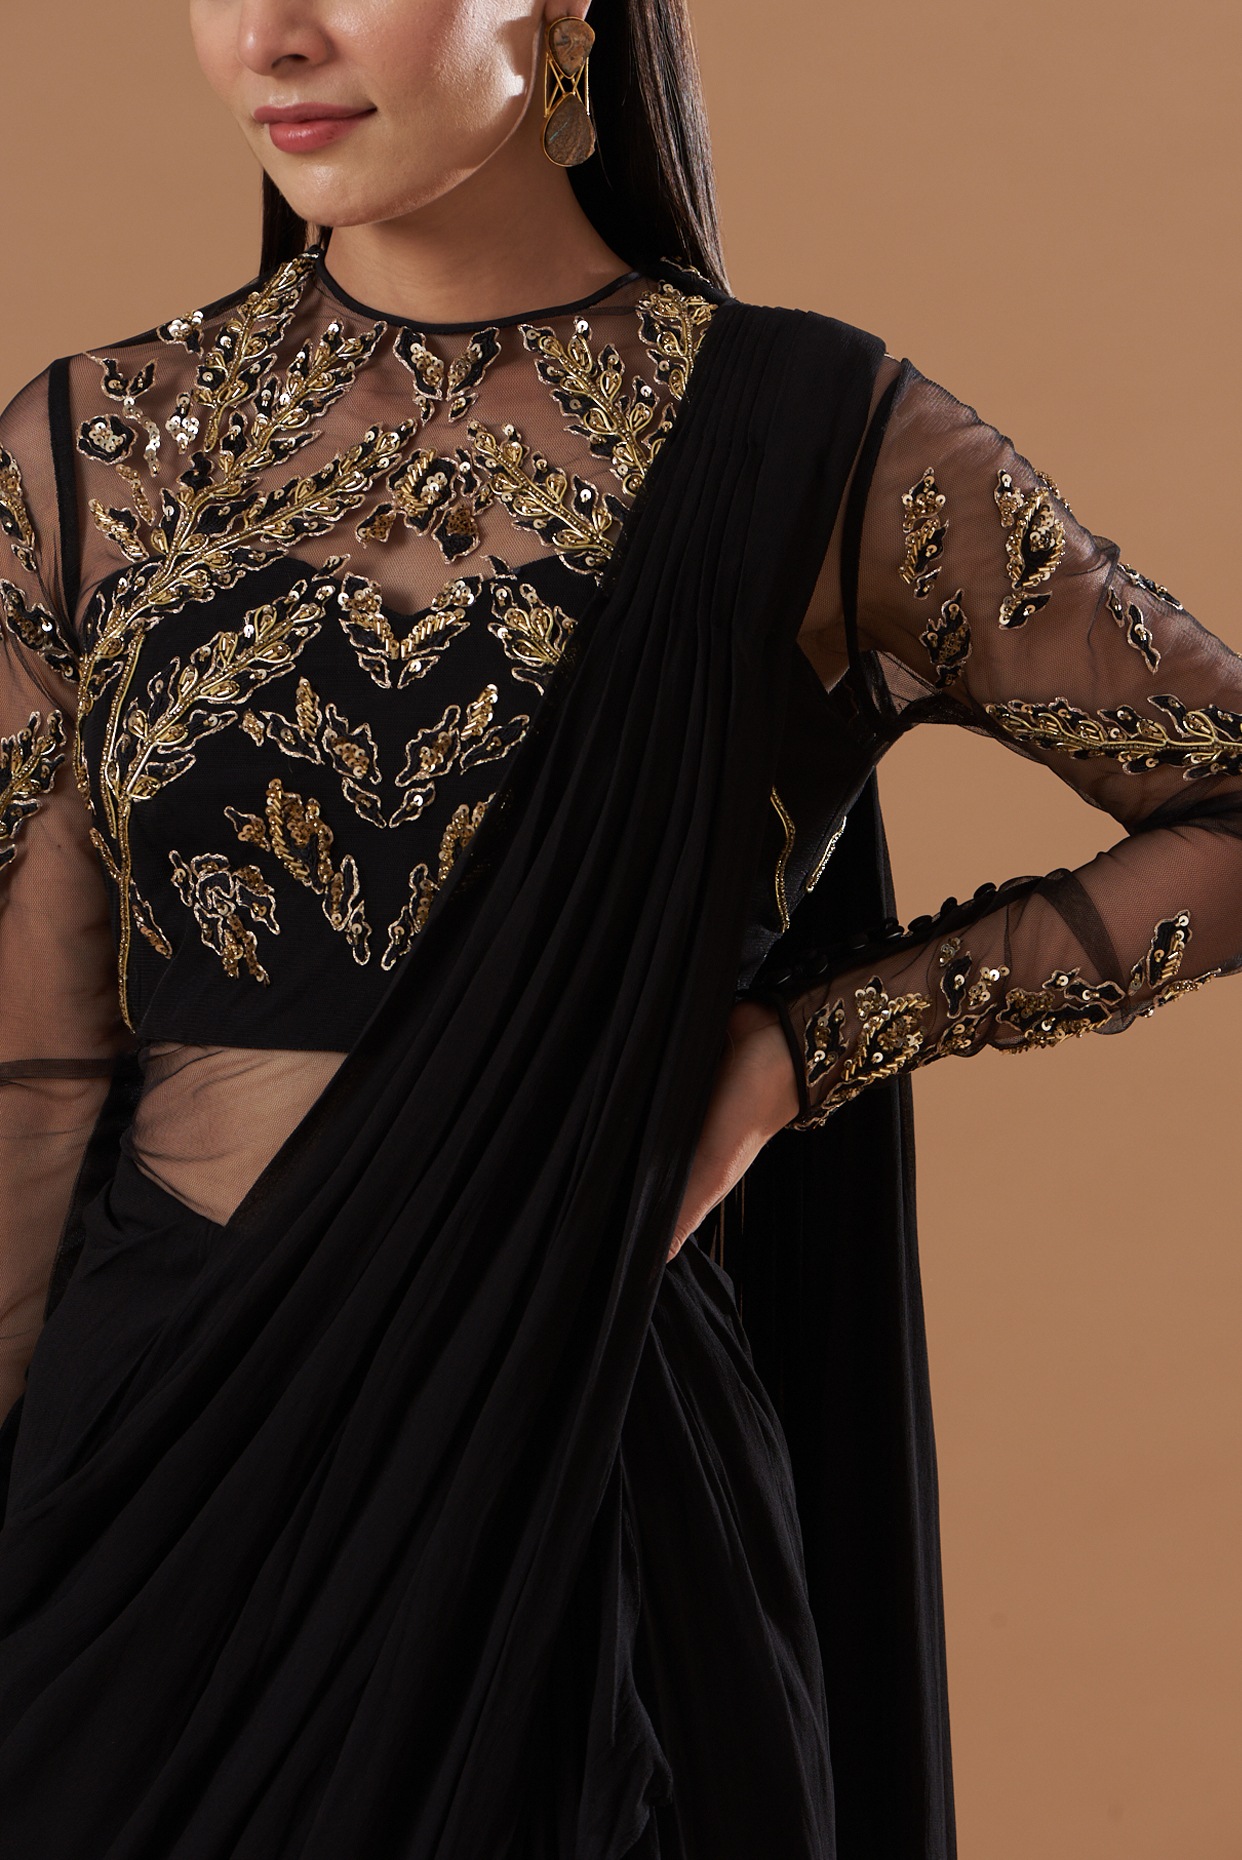 Dolly Jain - Gown style saree #gown #saree #sari... | Facebook